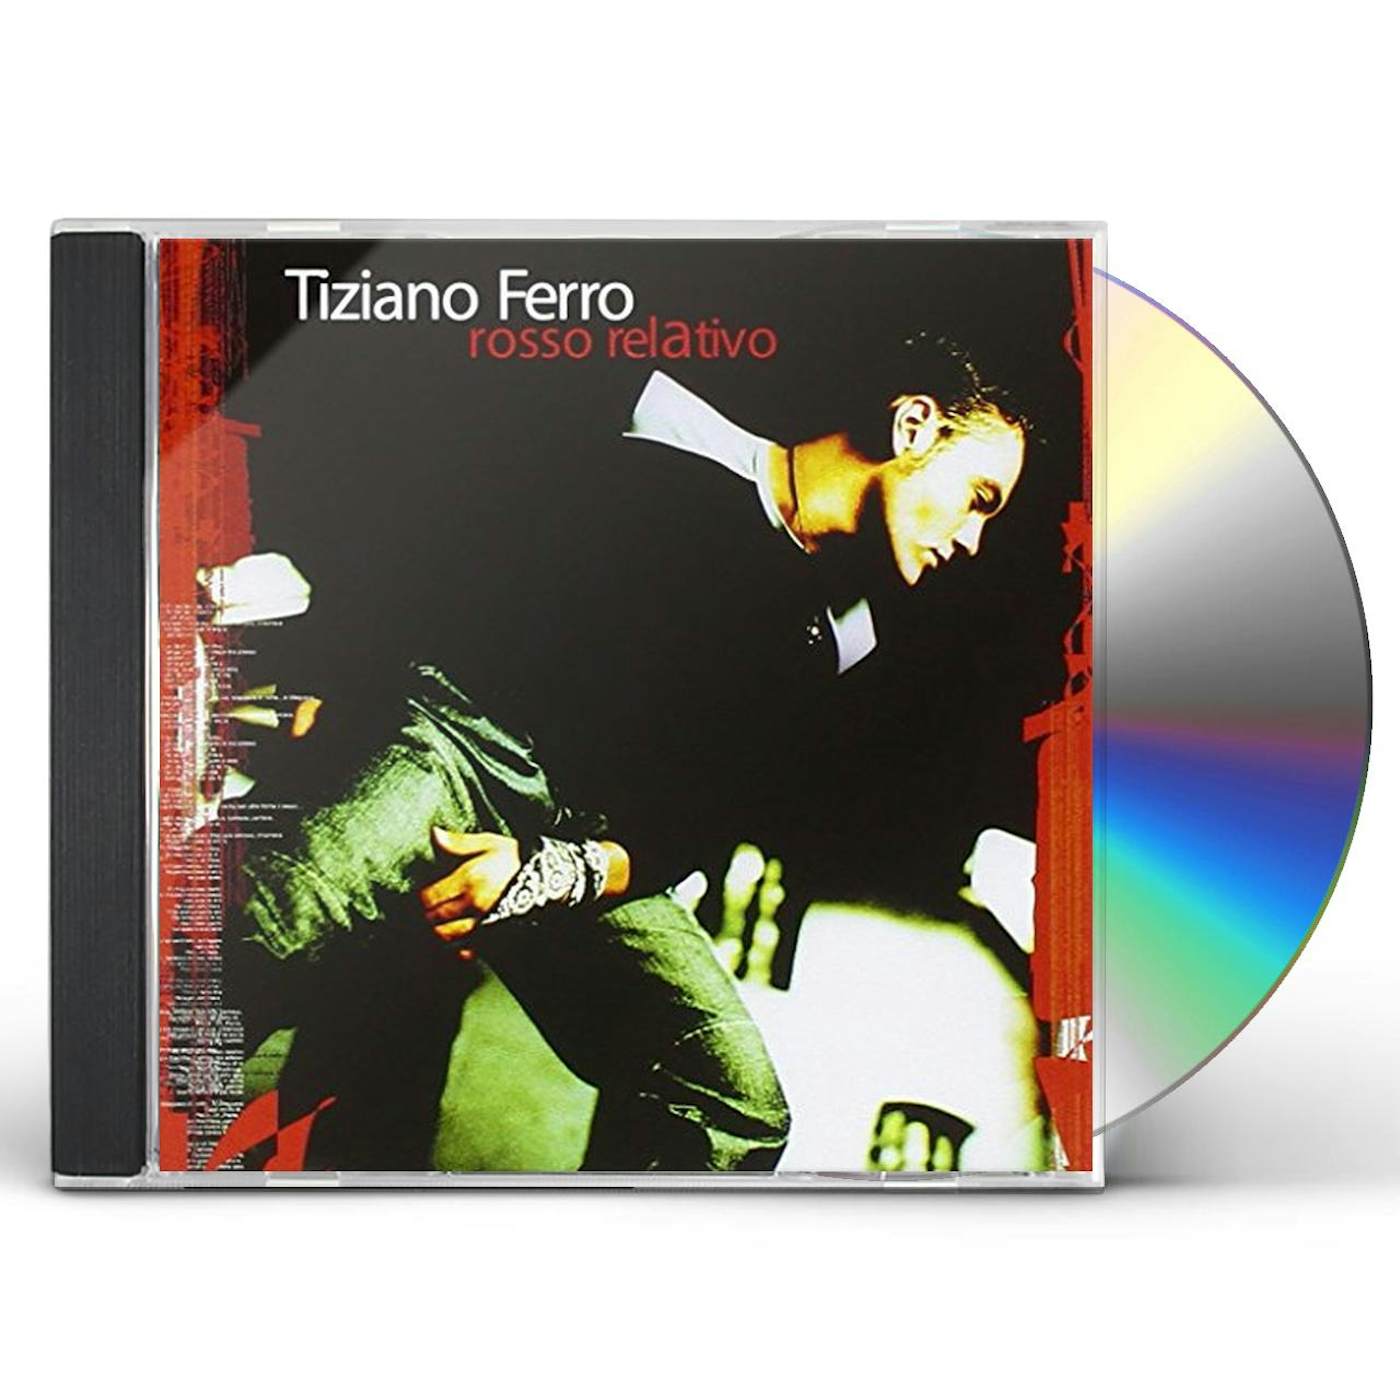 Tiziano Ferro ROSSO RELATIVO CD